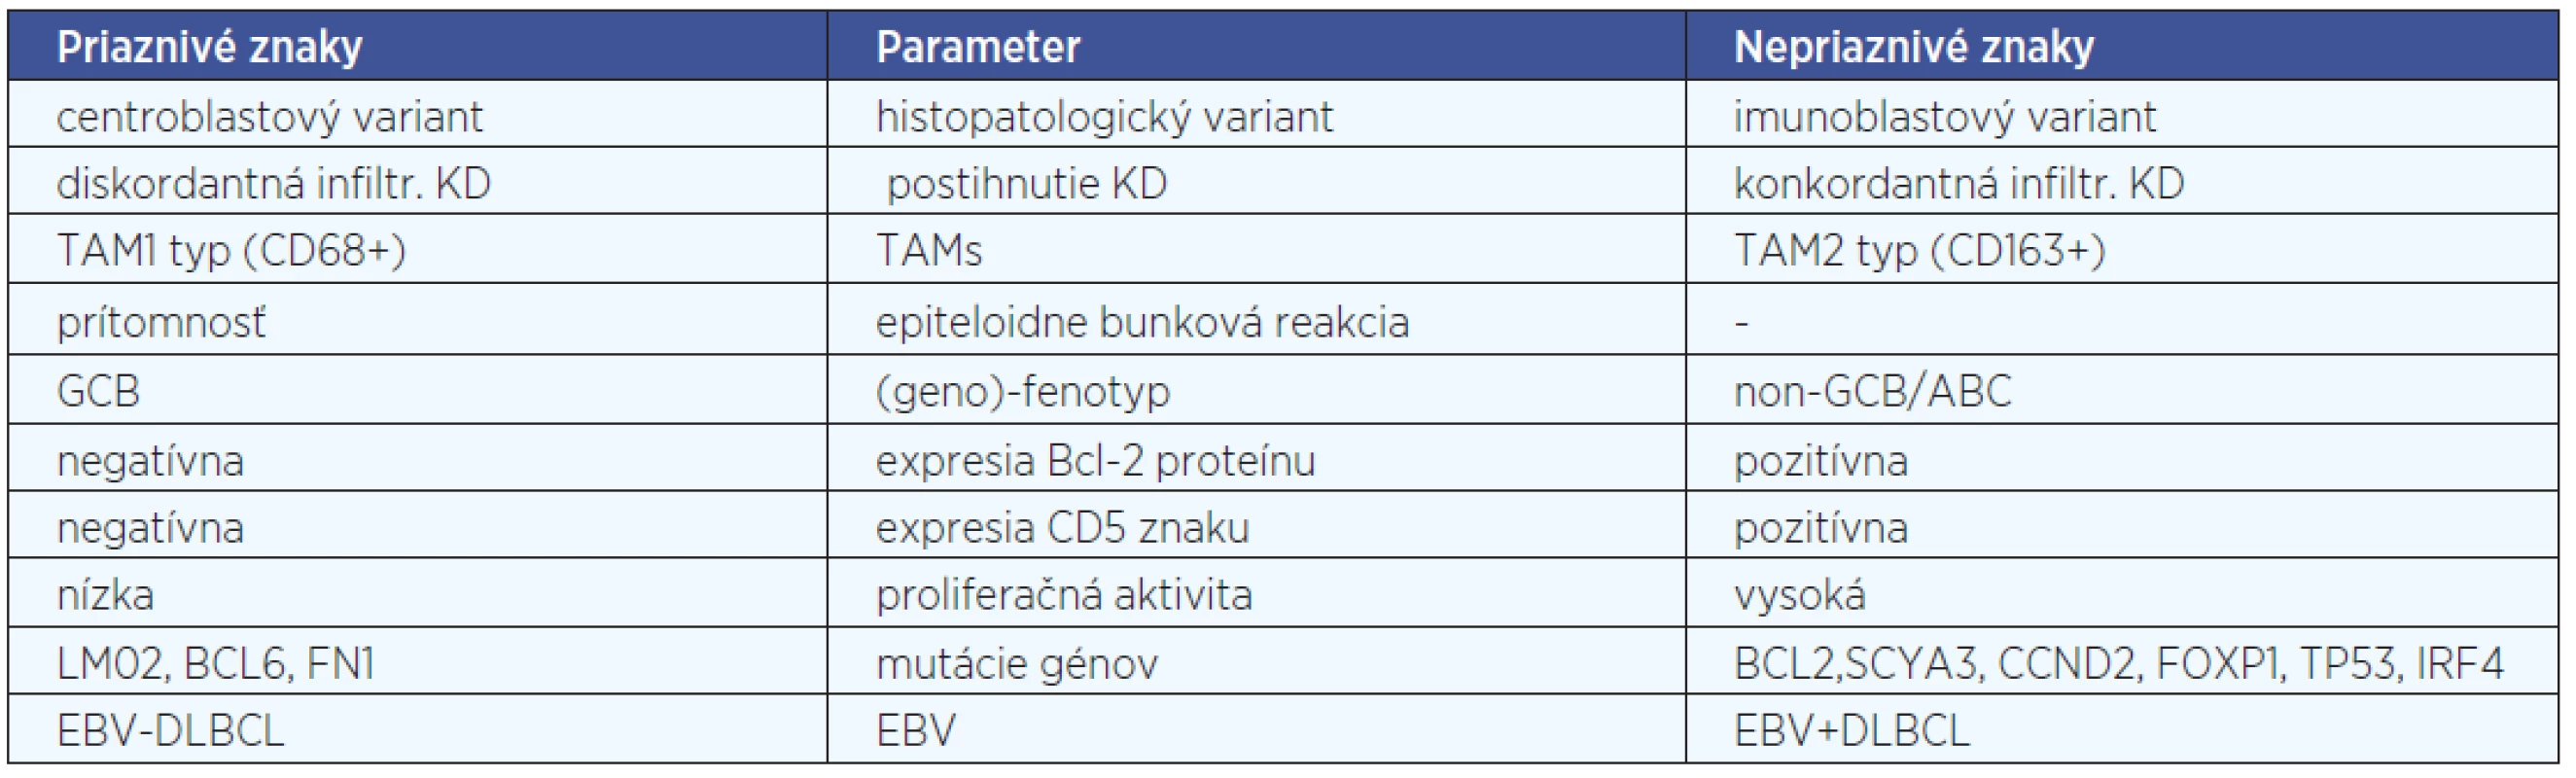 Niektoré prognostické parametre DLBCL podľa viacerých zdrojov.